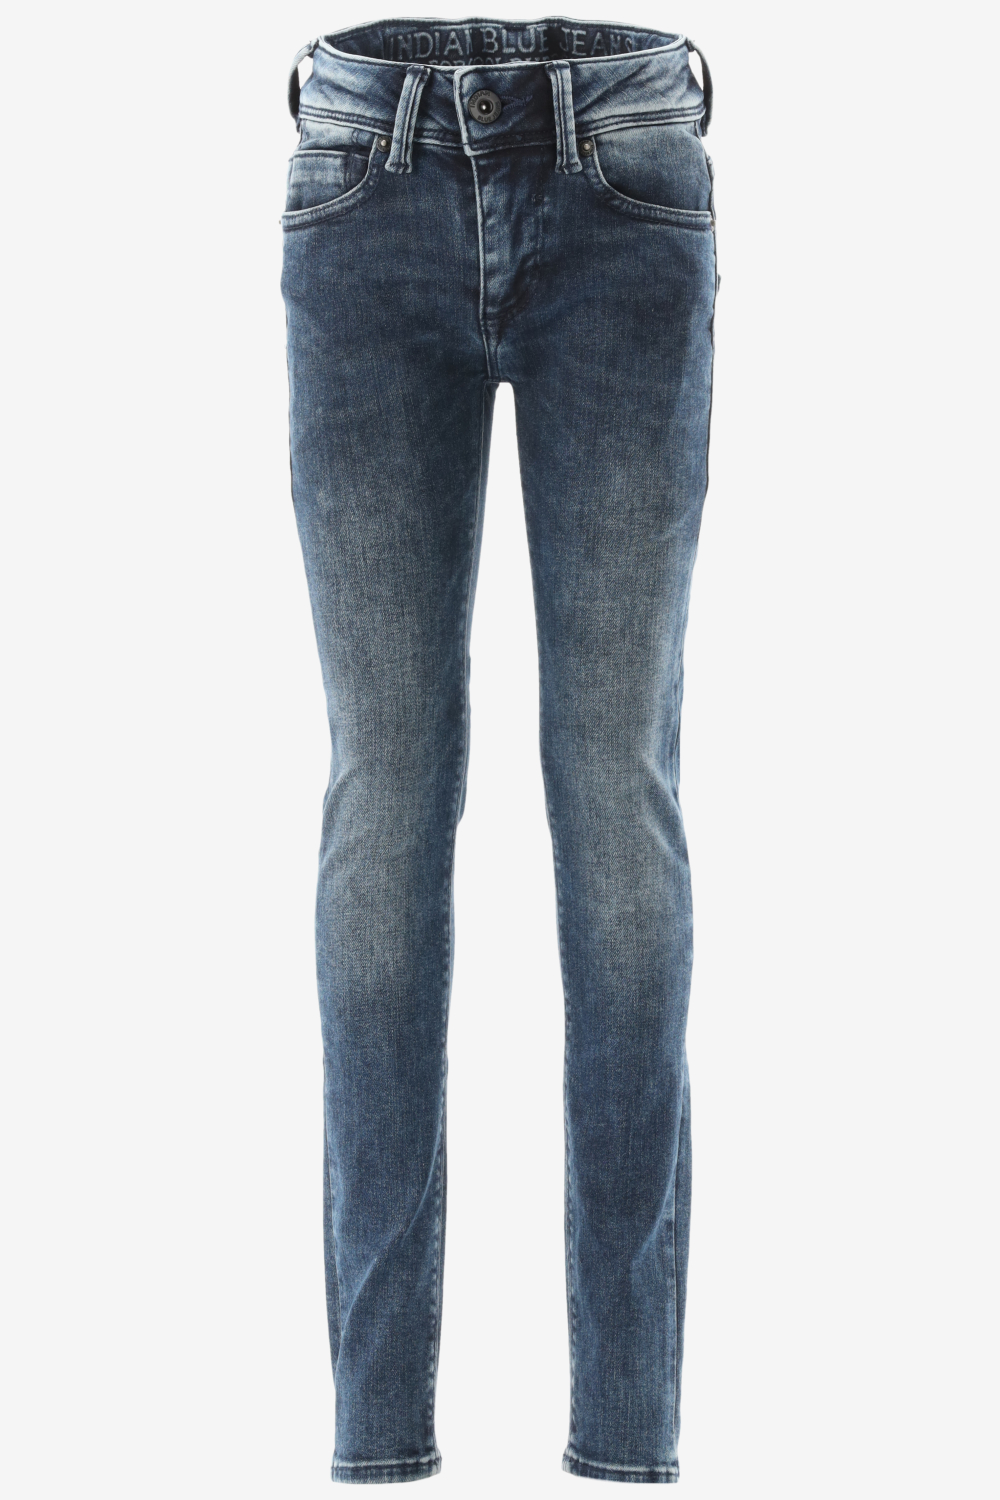 Indian Blue Jeans Jeans jongen blue black maat 116